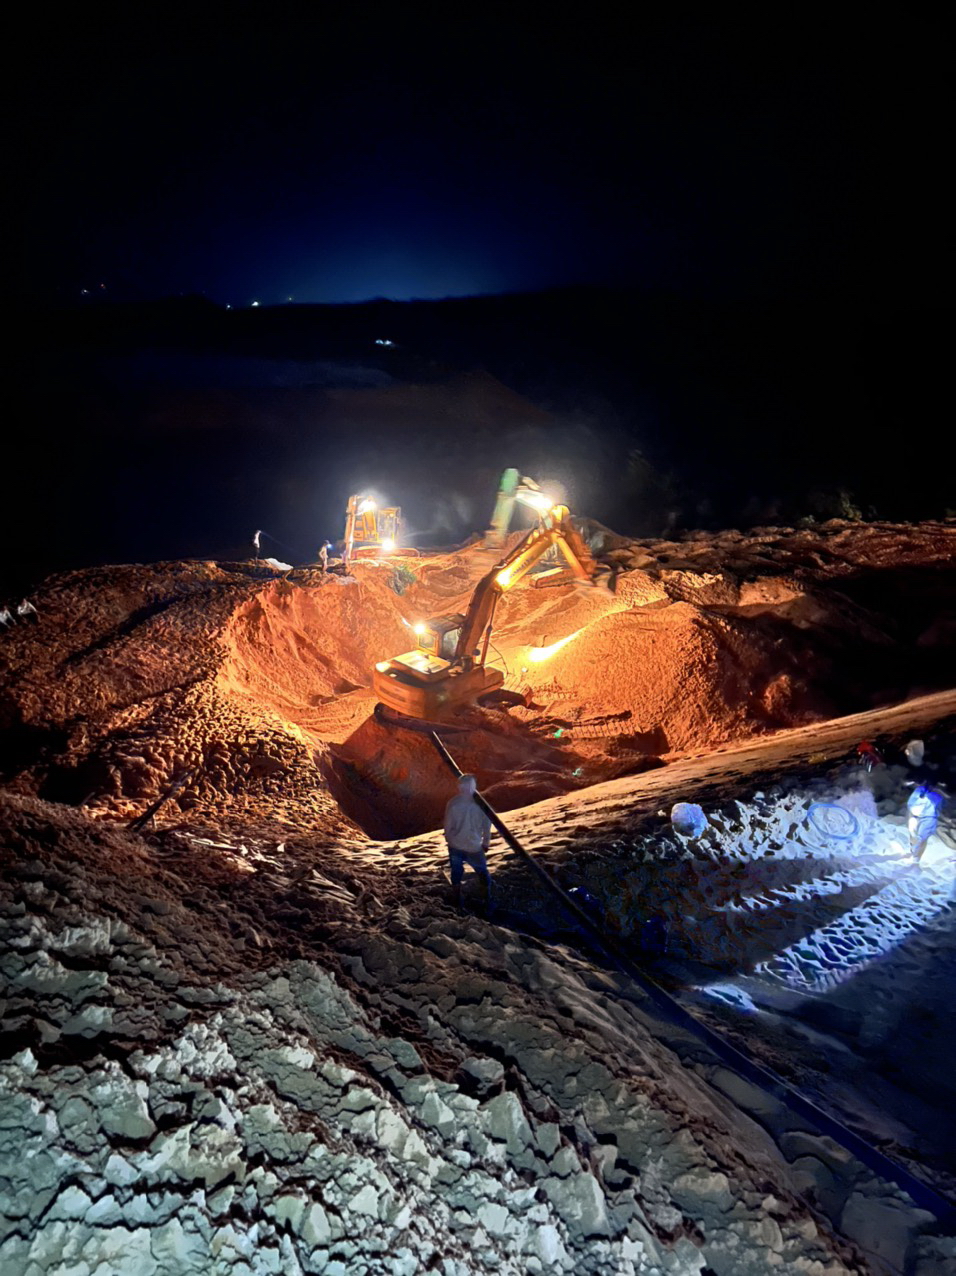 UBND tỉnh Bình Thuận chỉ đạo khẩn vụ sập mỏ titan ở khiến 1 người chết 3 còn mất tích  - Ảnh 3.